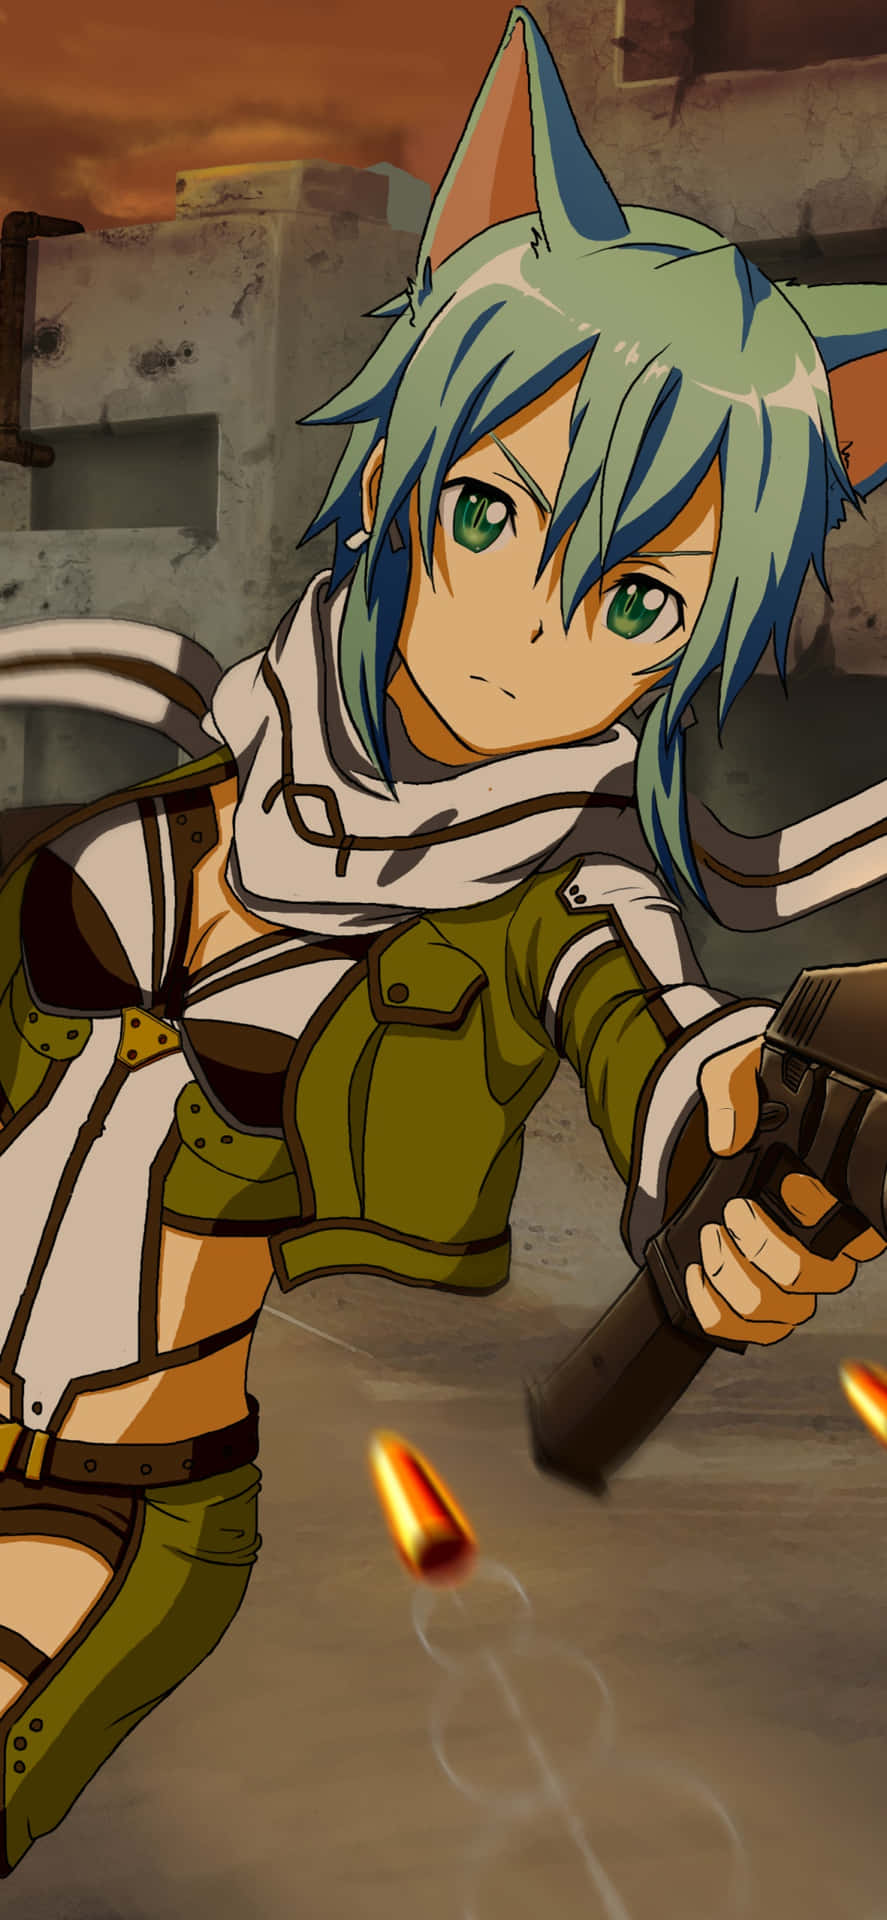 En pige i grøn uniform, der holder et gevær. Wallpaper